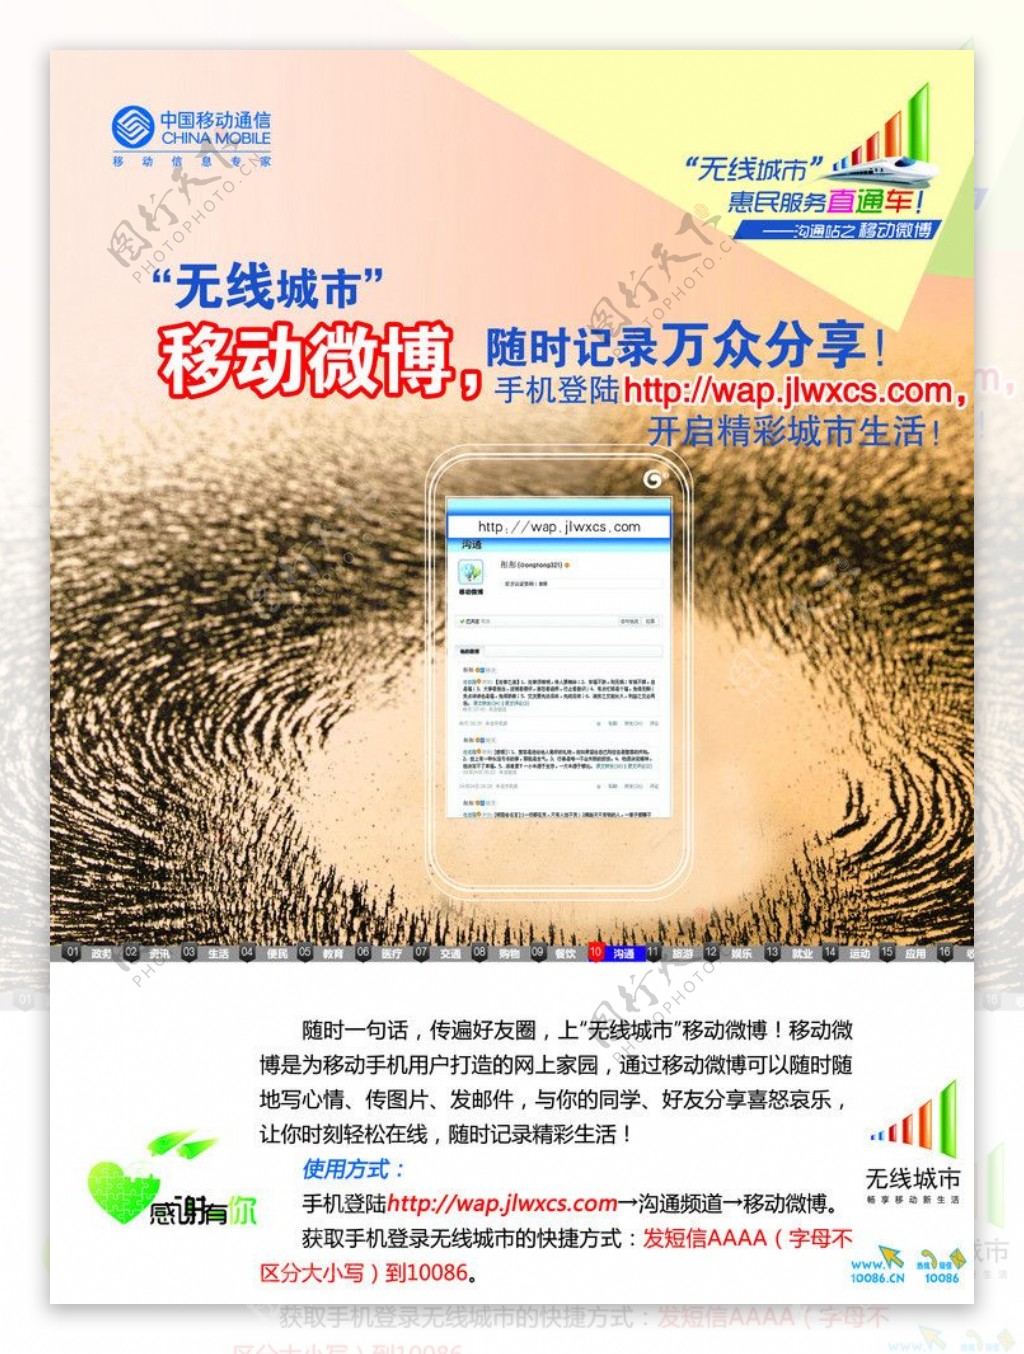 中国移动无线城市移动微博宣传单图片